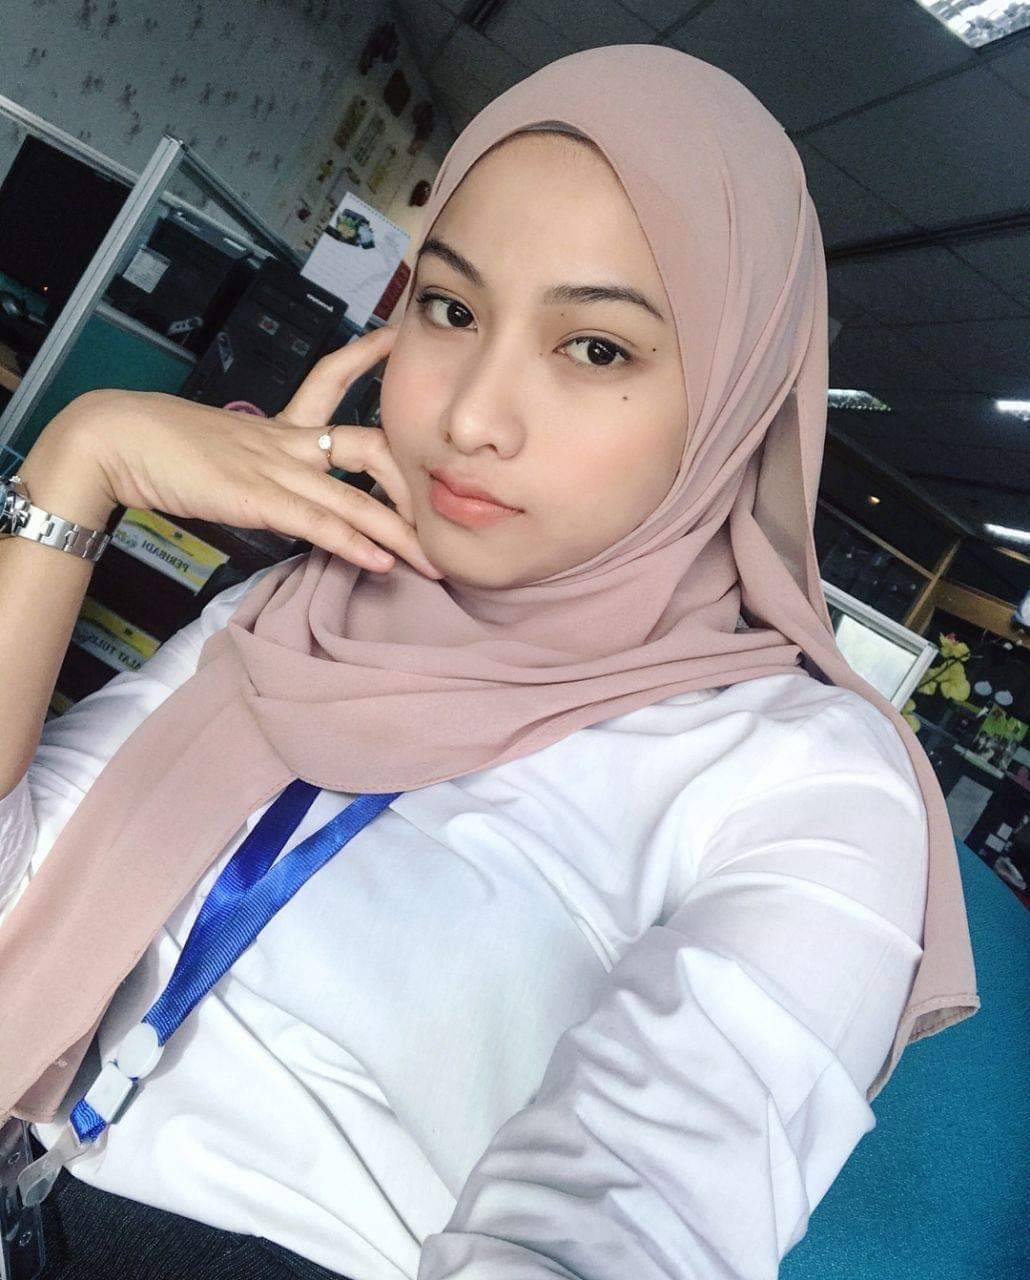 Main cantik. Малайзия девушки. Abg sma Colmek 2021. Tia Azman. Малайзия скандал хиджаб.